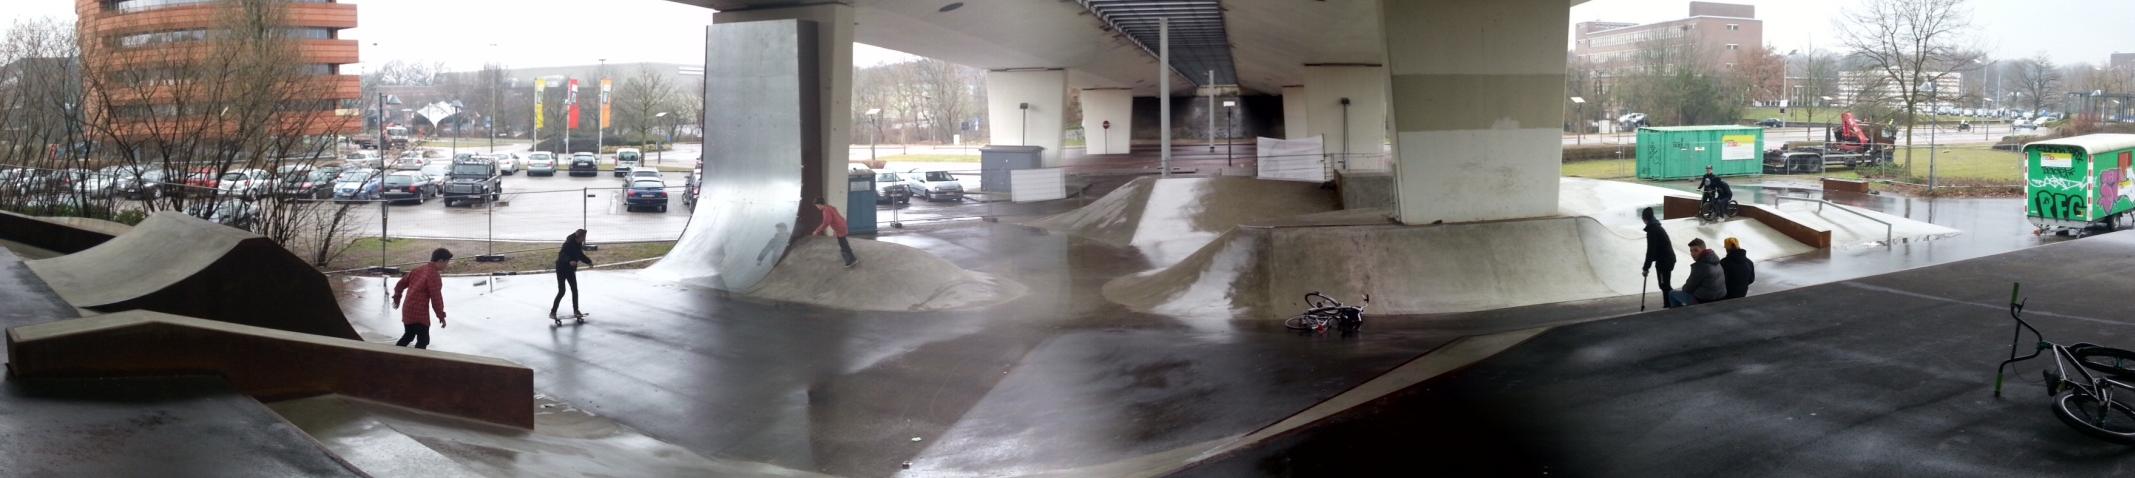 G e n k, B e l g i ë Voor dit tweede door van Vliet Buitenruimte in België aangelegde skatepark vonden de skaters en